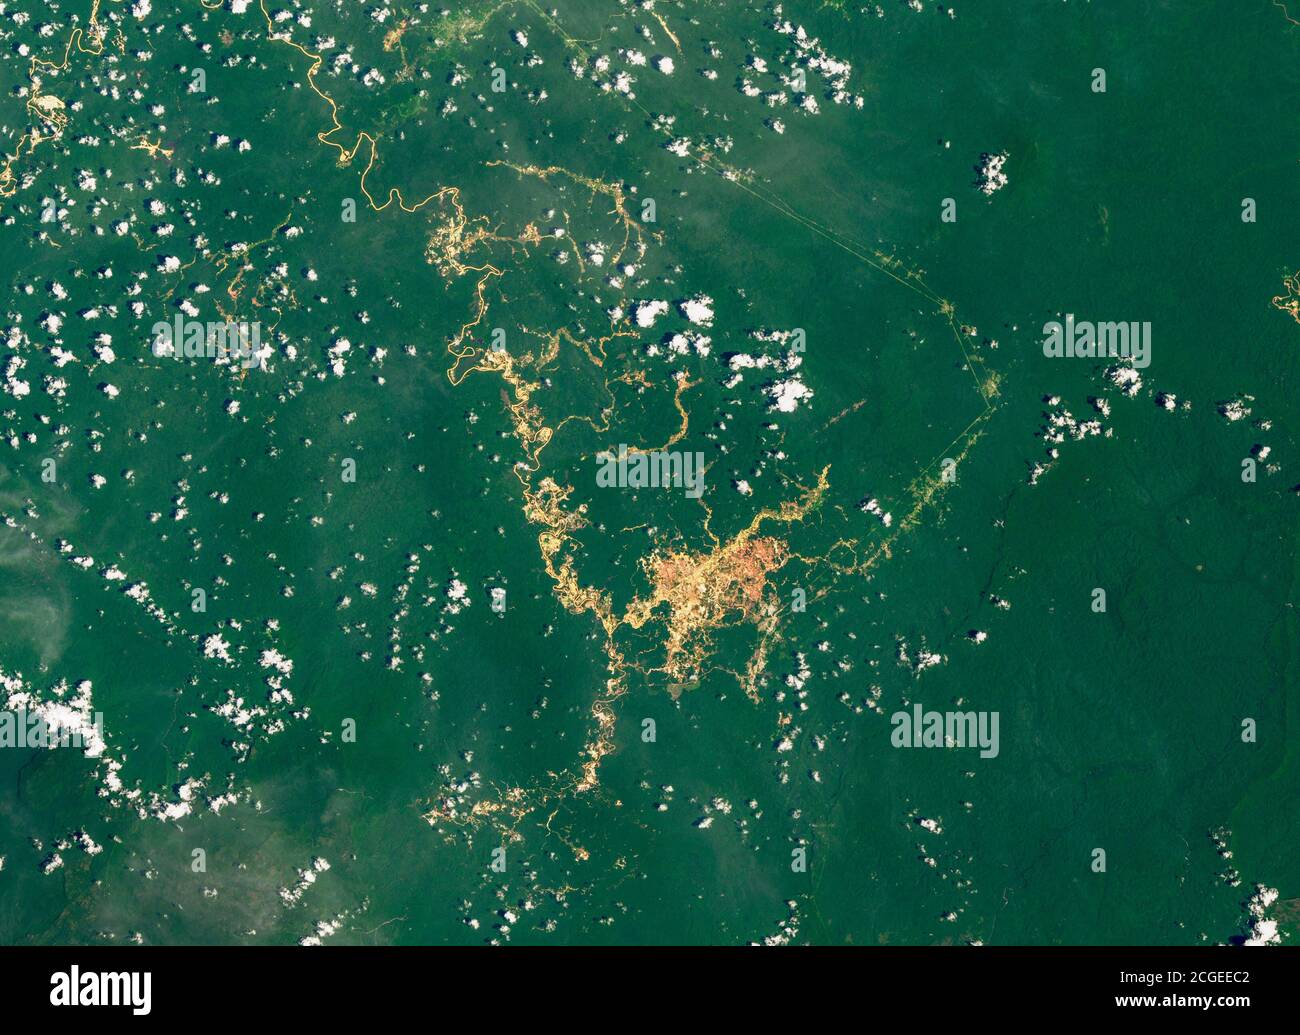 Entwaldung im Amazonas mit Narben von entwaldeten Gebieten Stockfoto